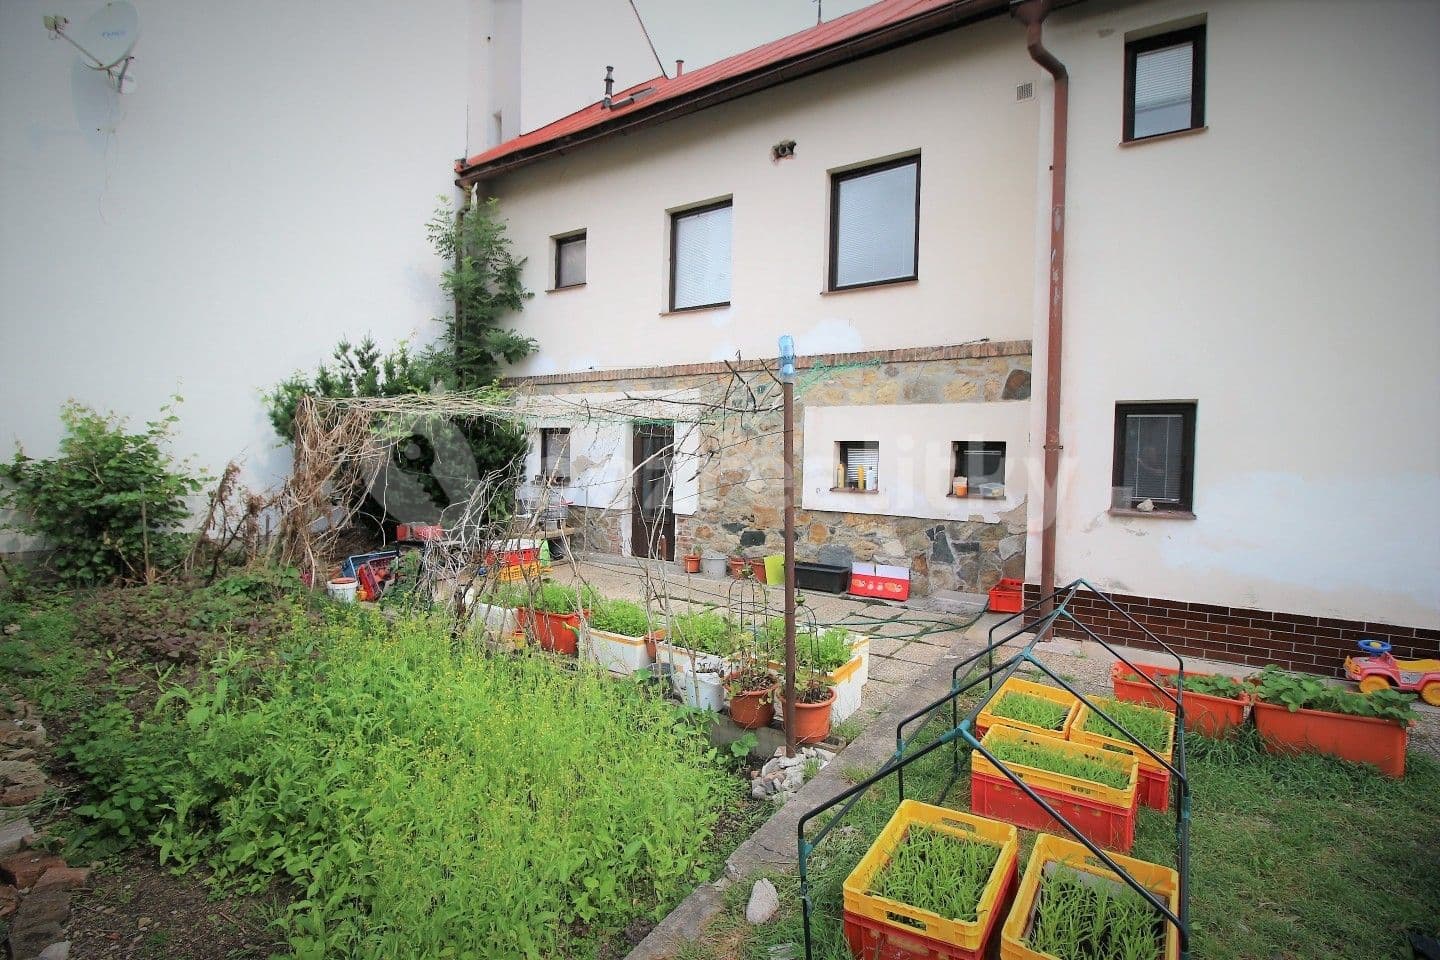 non-residential property for sale, 462 m², Mikuláše Střely, Krucemburk, Vysočina Region